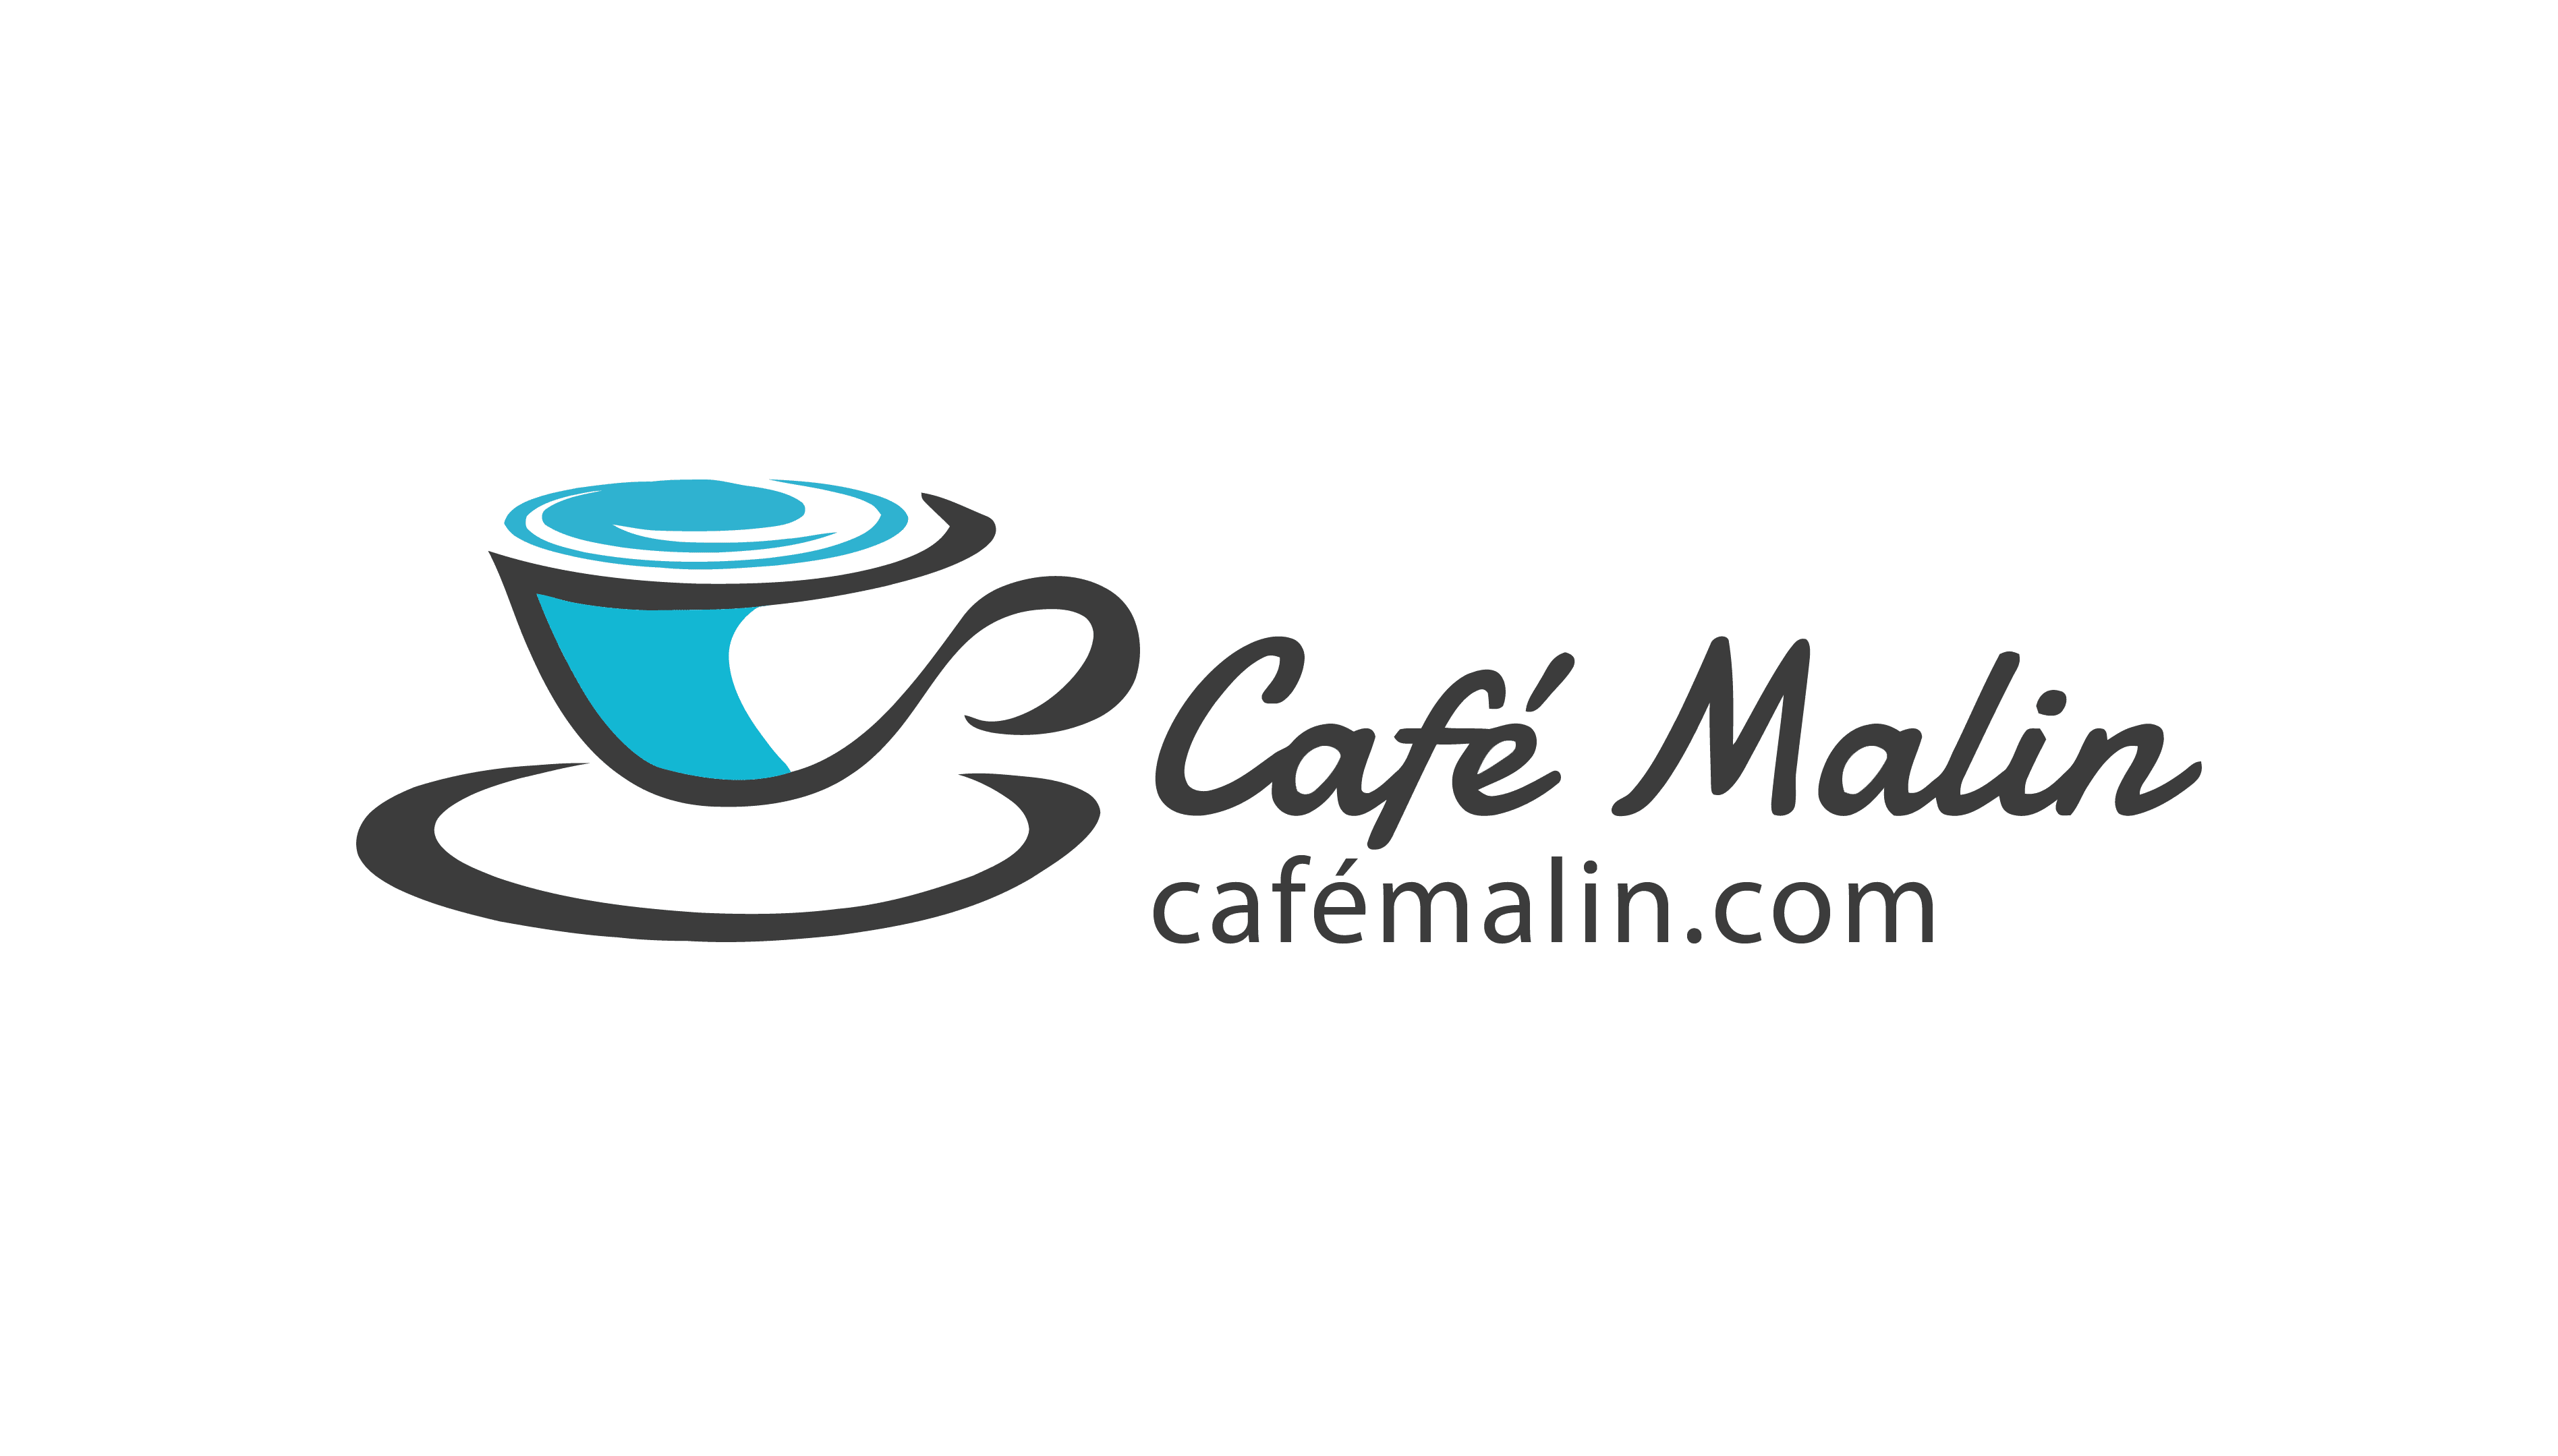 Acheter Café en grains Lavazza Suerte (1kg) en ligne?